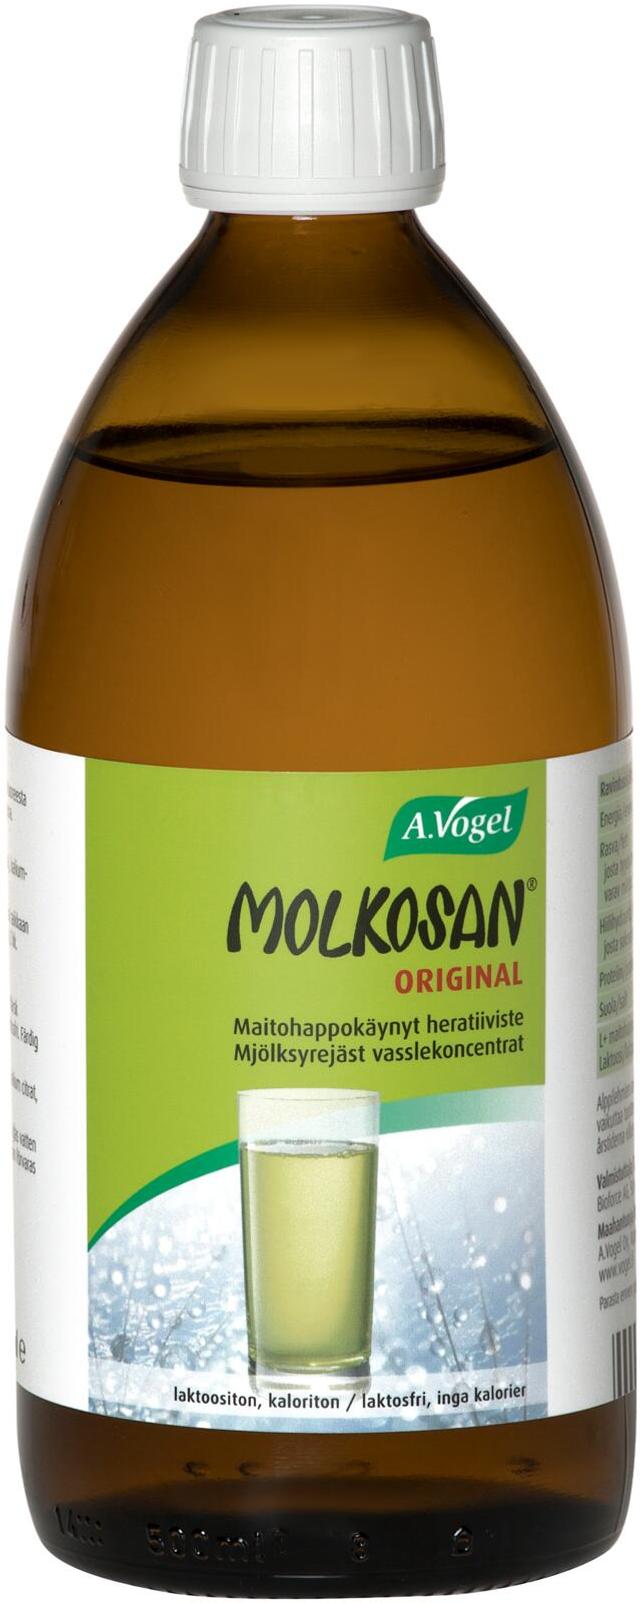 Molkosan® Original 500ml maitohappokäytetty heratiiviste